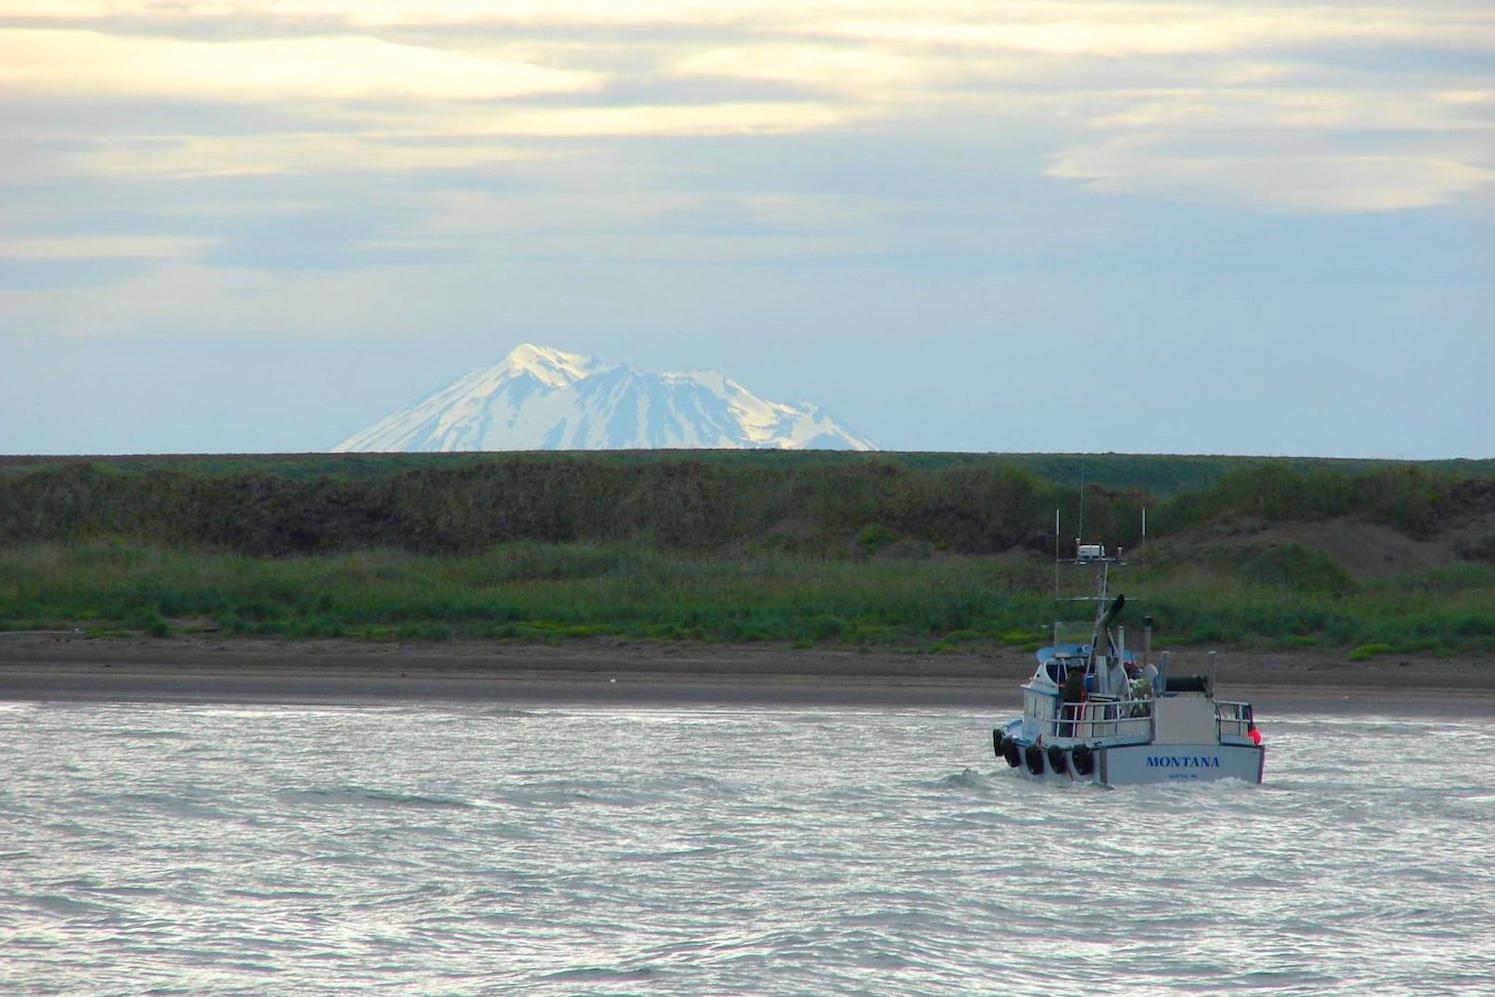 Boat on Bristol Bay Alaska - Pebble Mine will not go forward